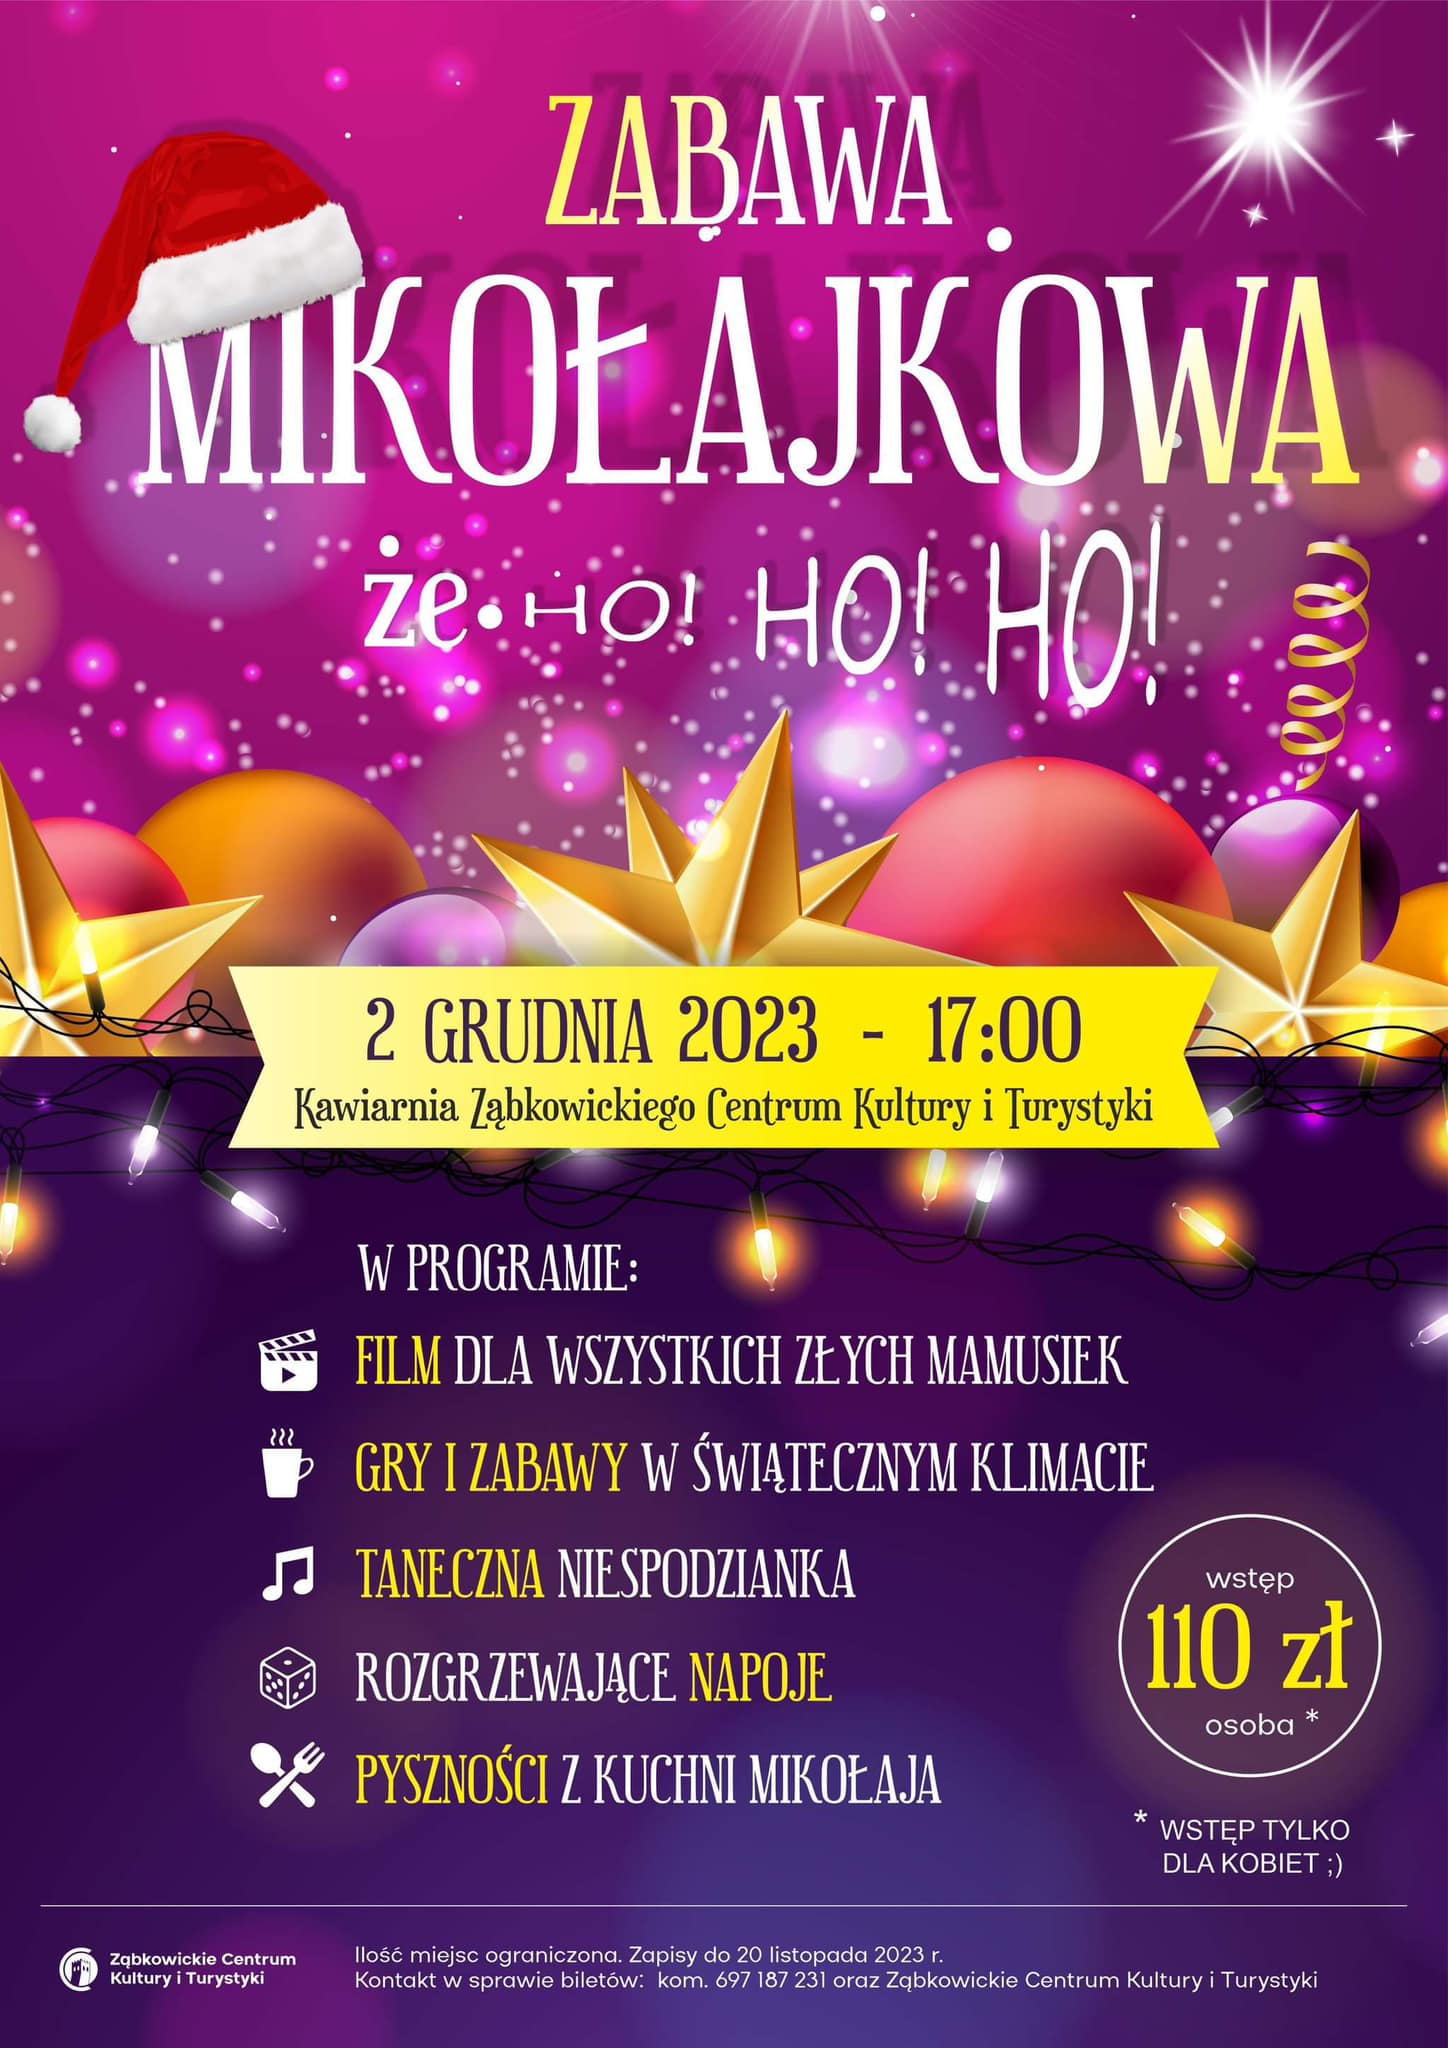 Plakat informujący o zabawie mikołajkowej 2 grudnia 2023 o godzinie 17:00 w kawiarni Ząbkowickiego Centrum Kultury i Turystyki. W tle znajdują się kolorowe bombki i gwiazdy oraz czapka św. Mikołaja.